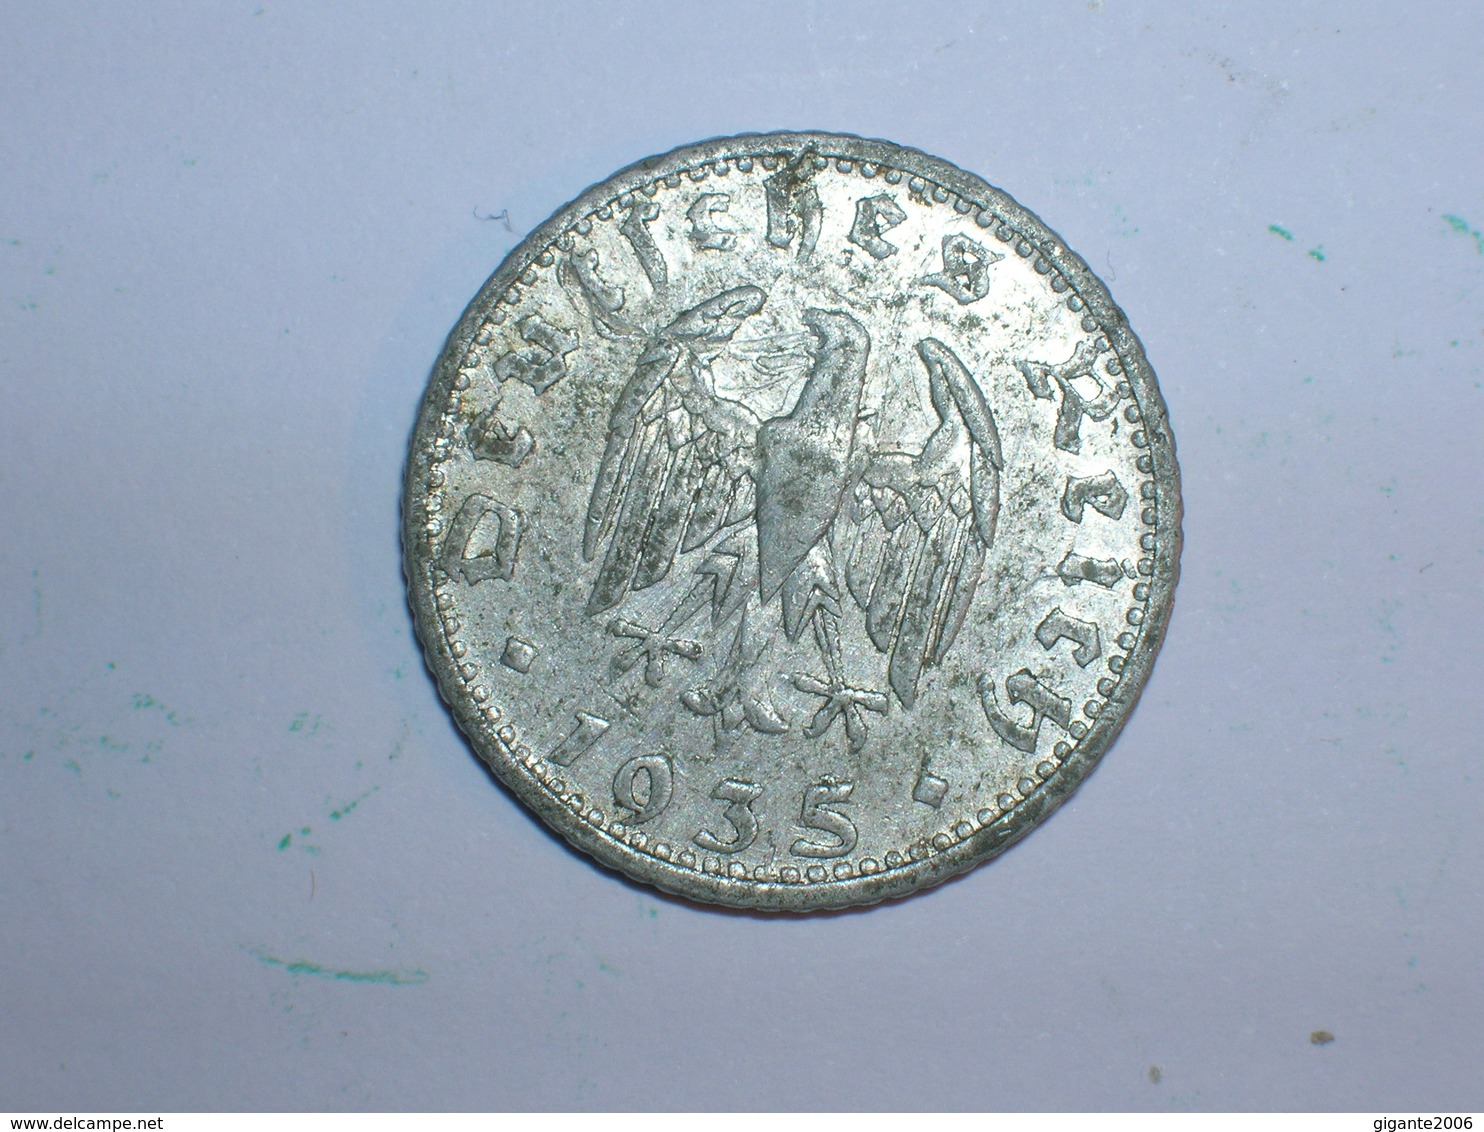 ALEMANIA 50 PFENNIG 1935 D (1218) - 50 Reichspfennig